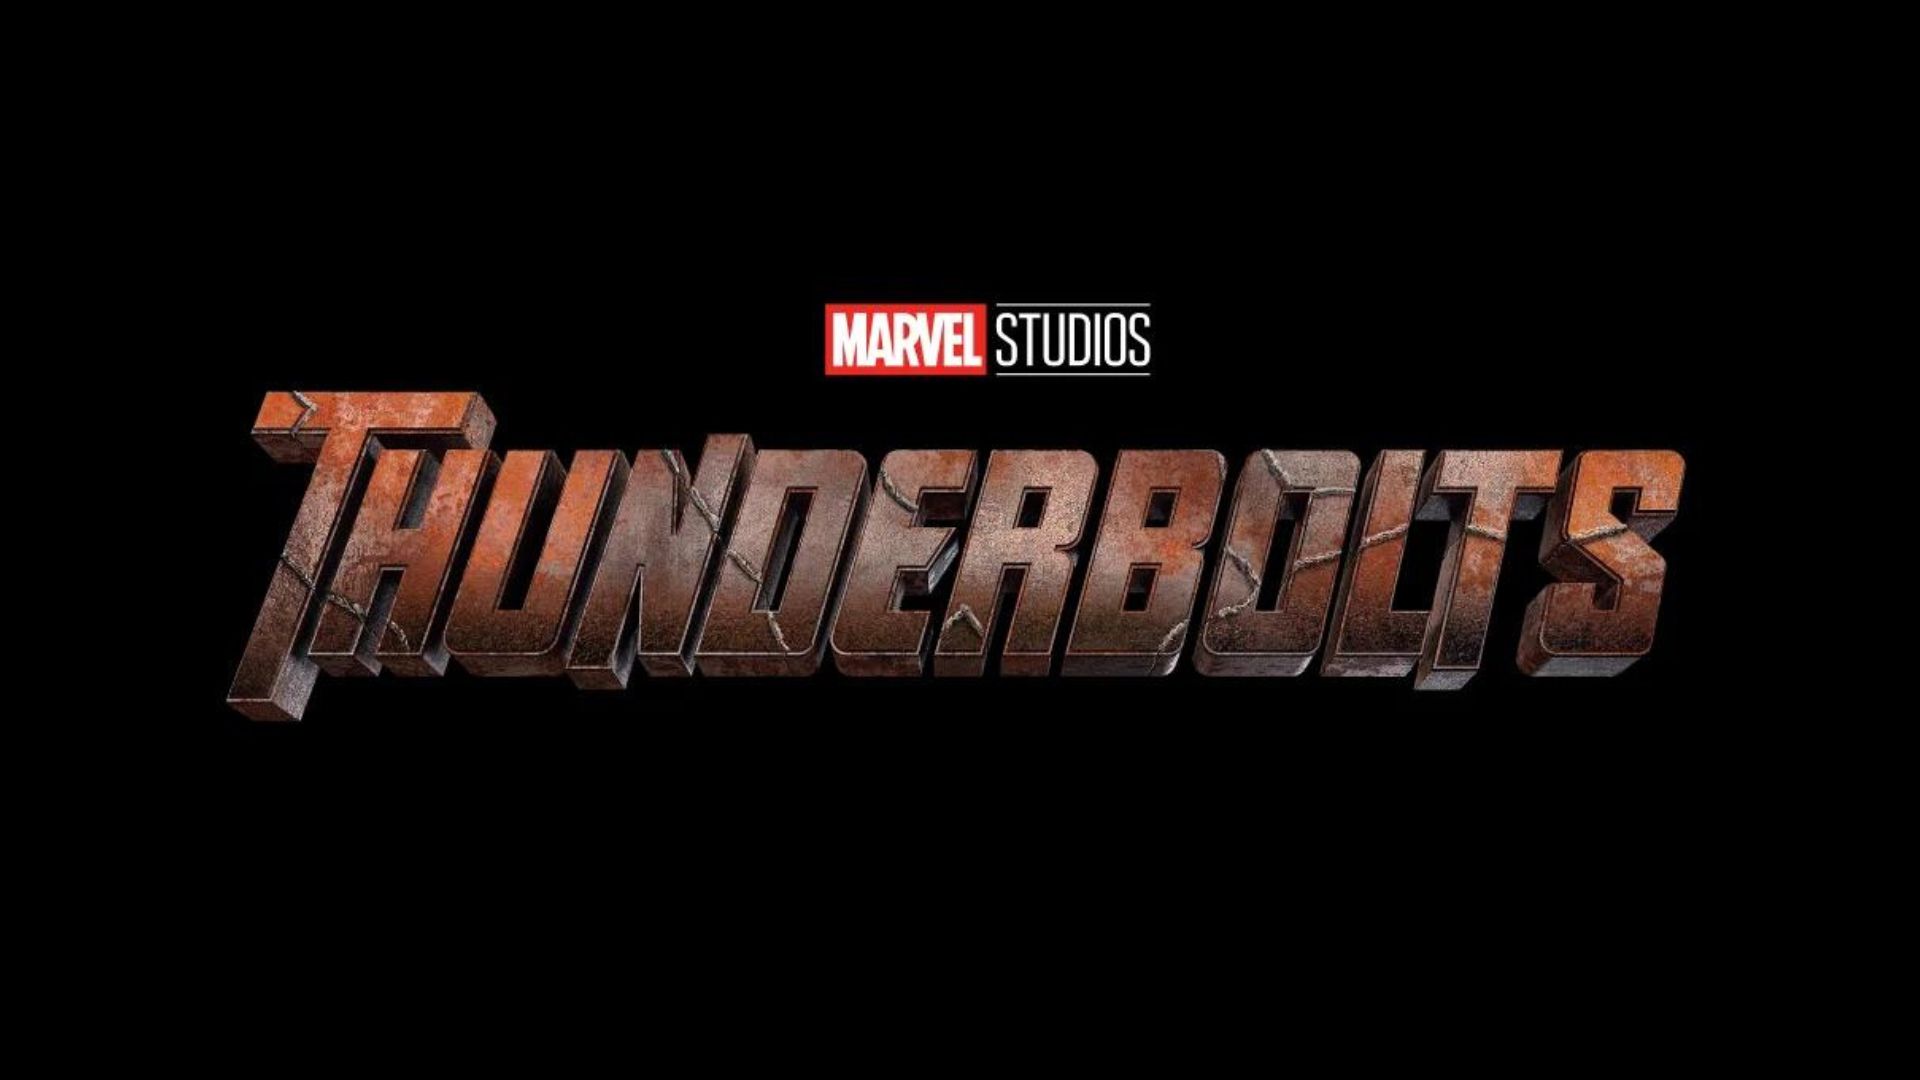 Marvel Studios antecipa lançamento de Thunderbolts